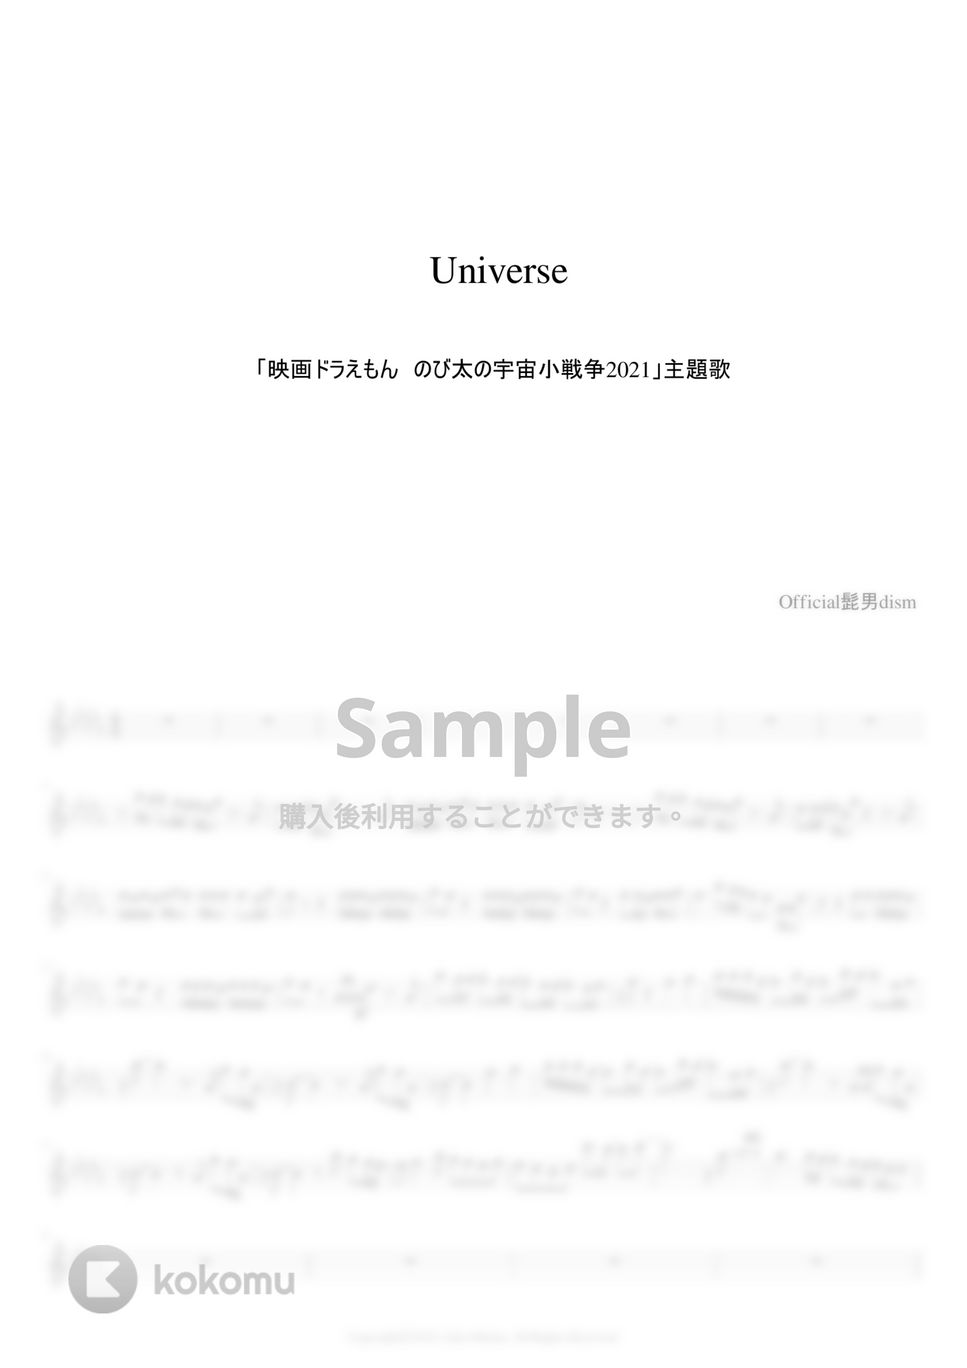 Official髭男dism - Universe (フルート用メロディー譜) by もりたあいか